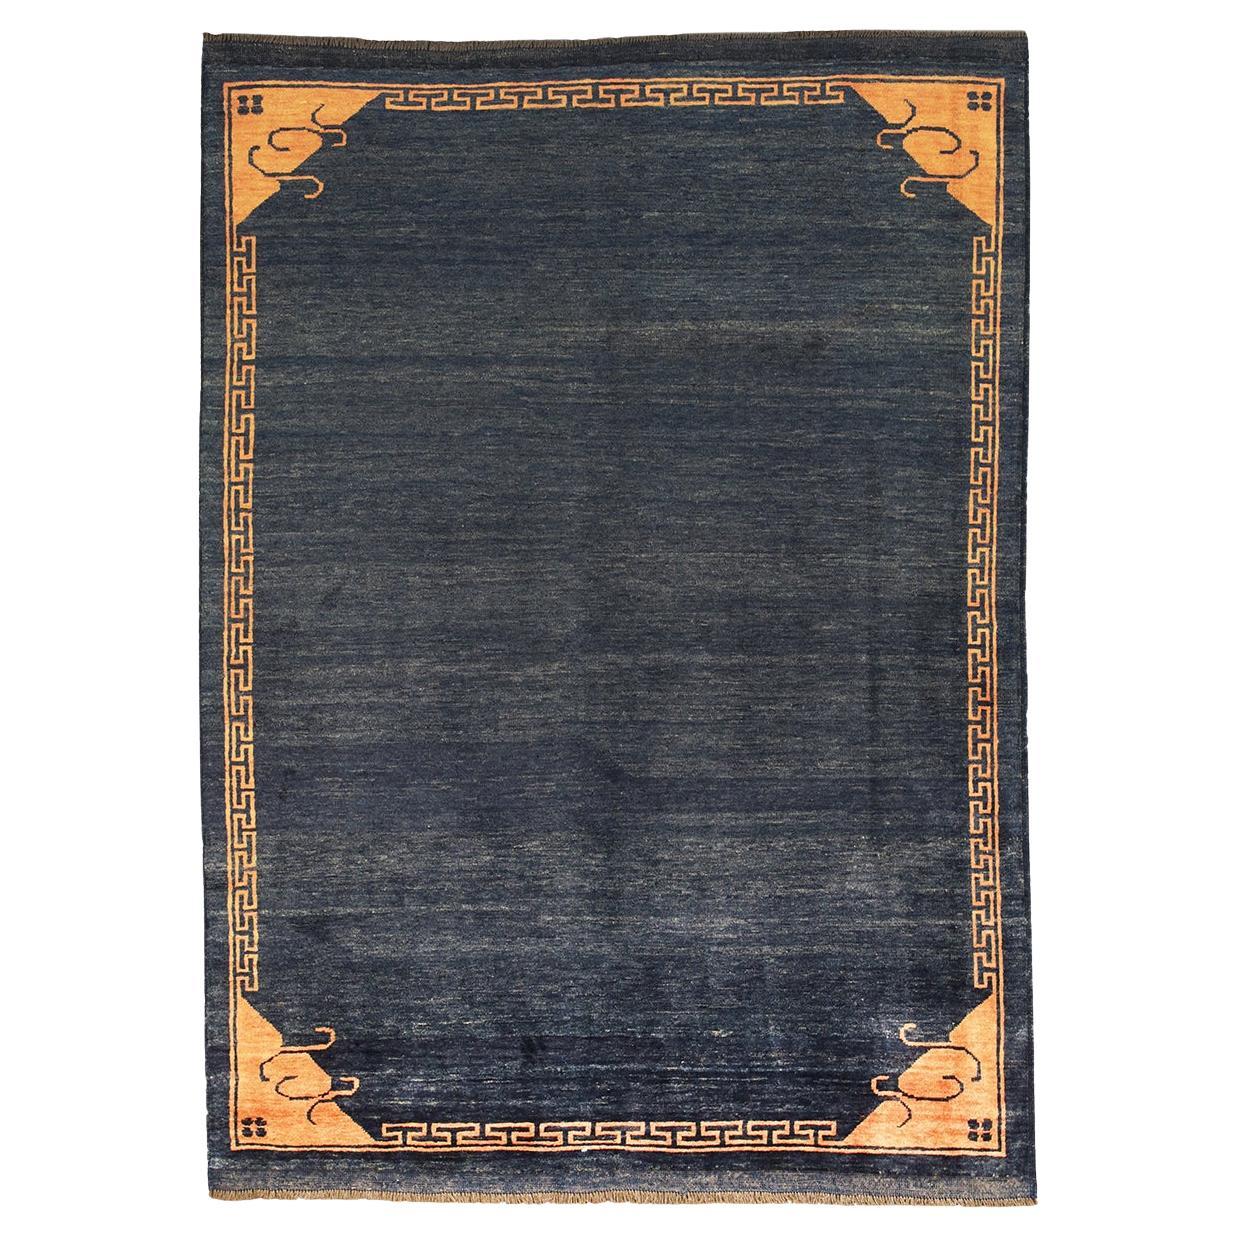 Gabbeh Minimalistischer Vintage-Teppich in Blau